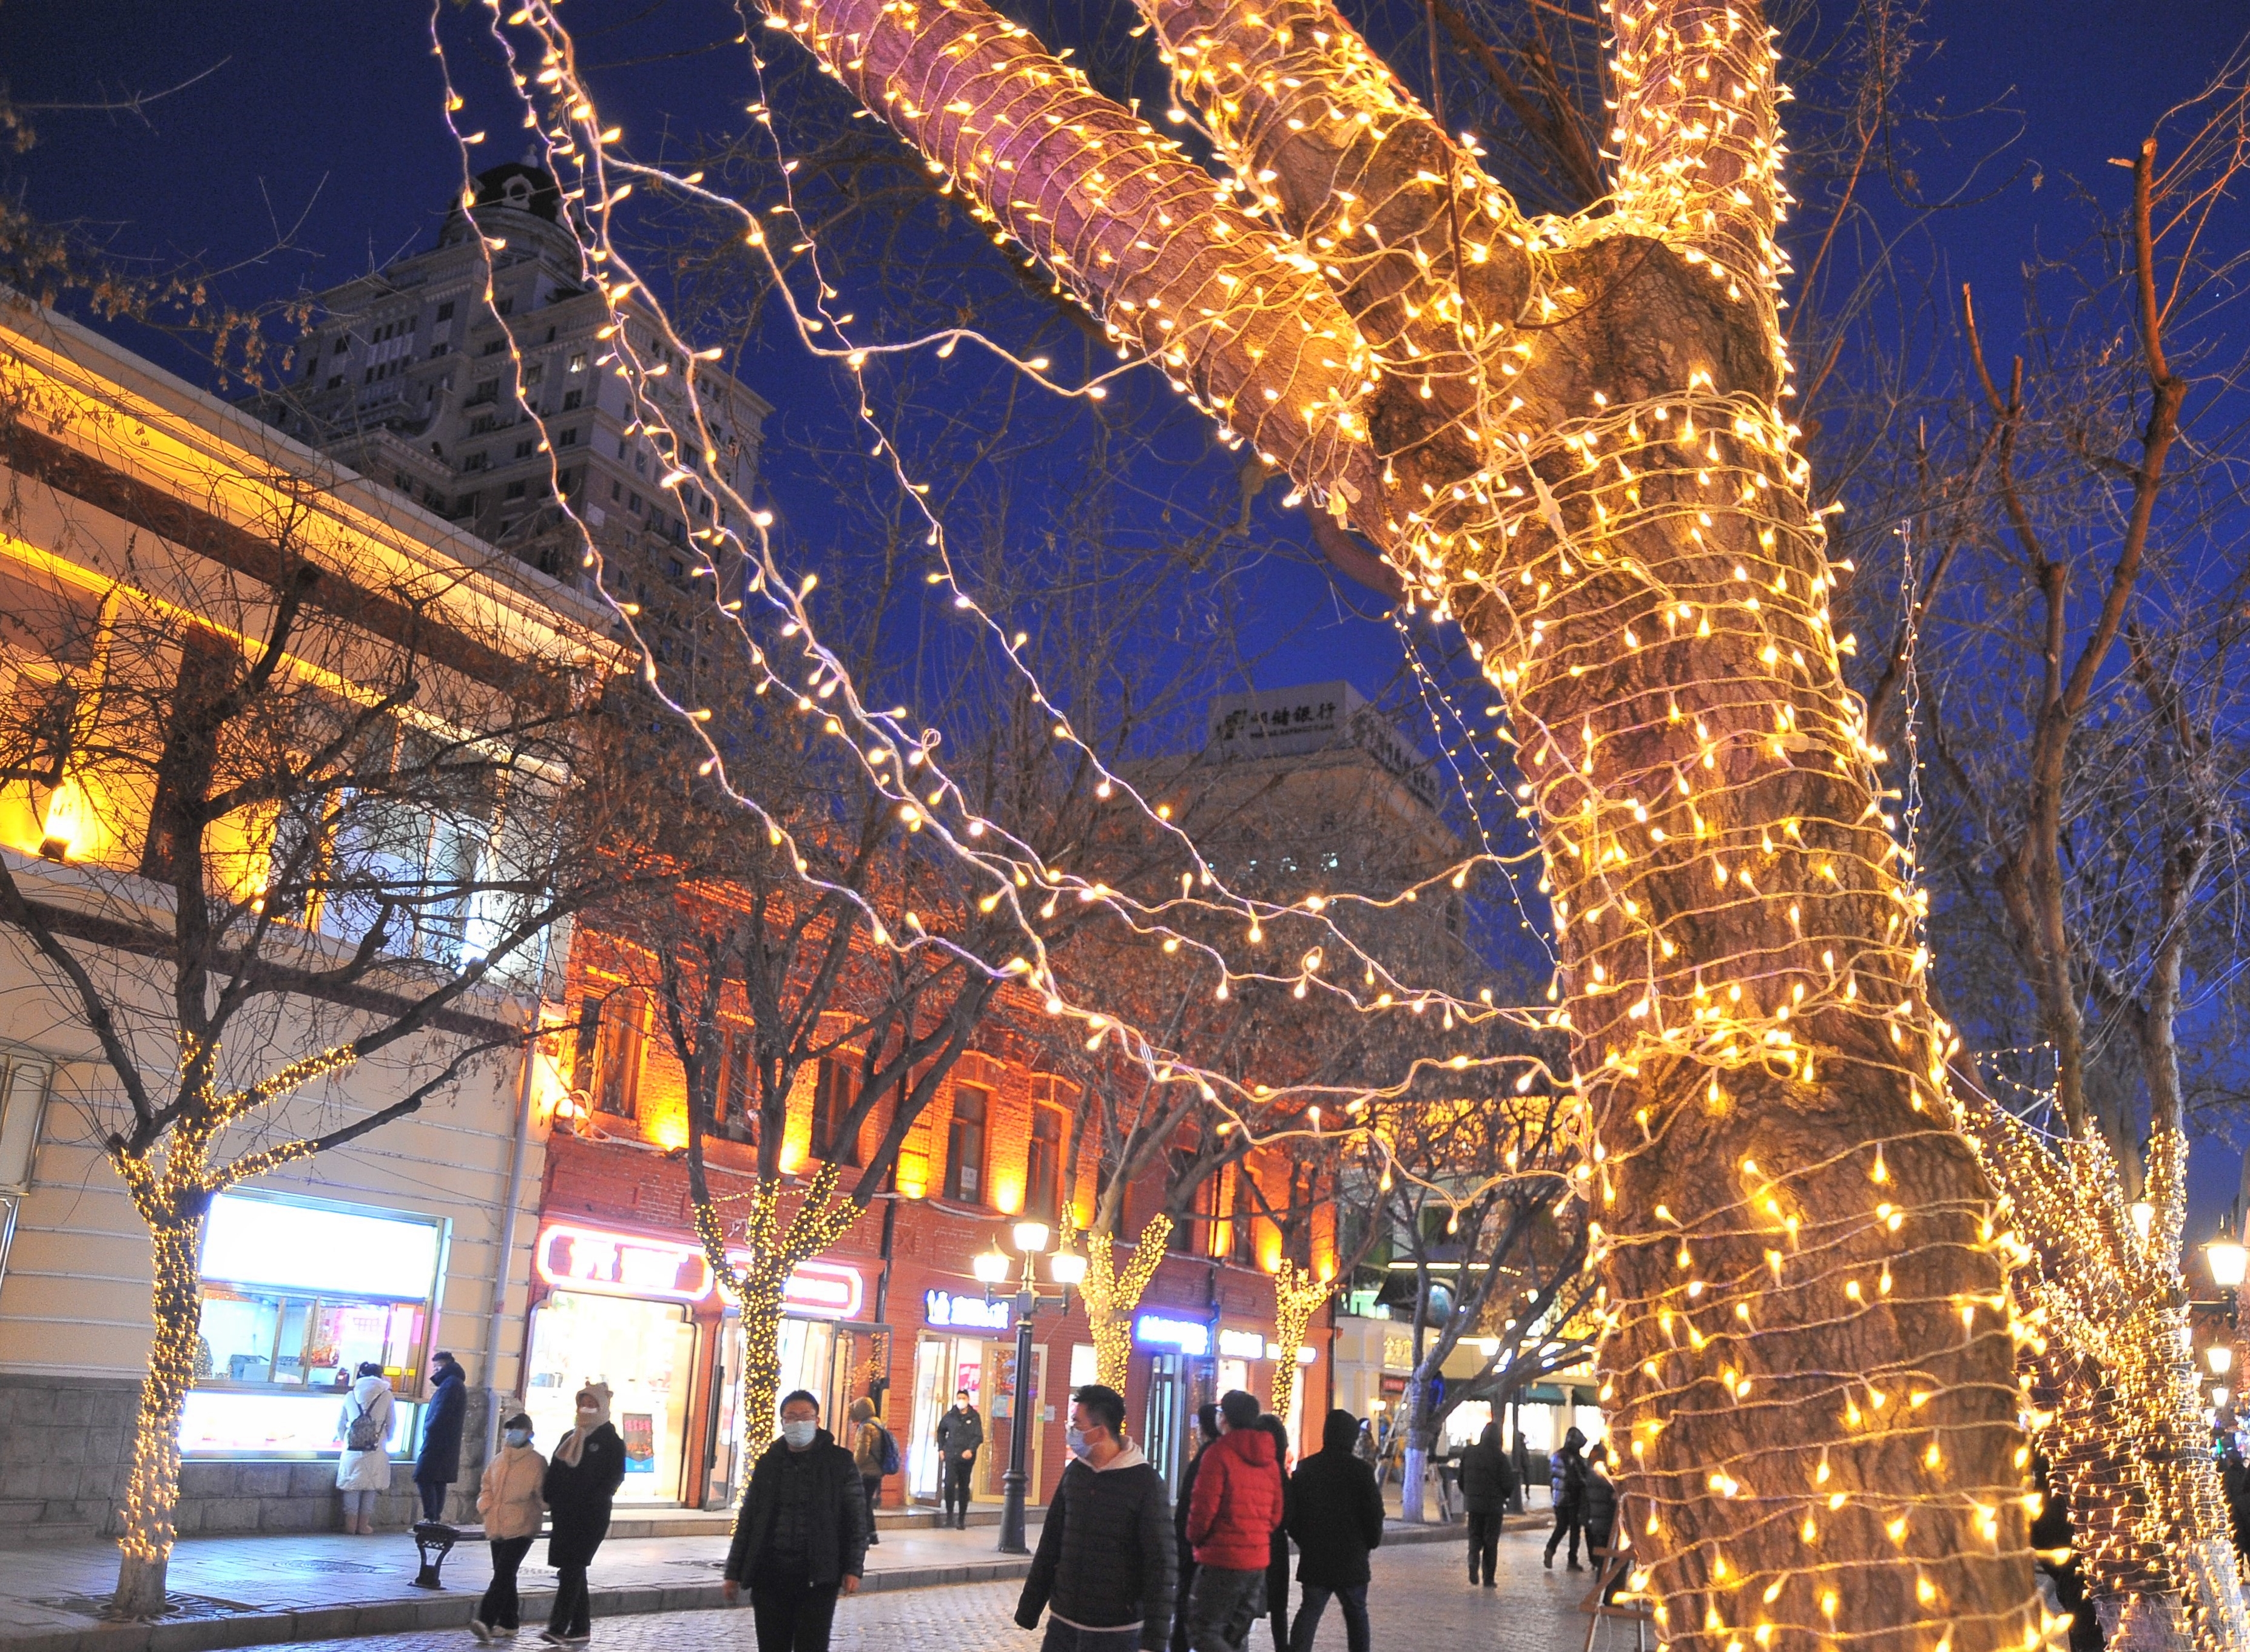 12月1日晚上，哈尔滨市道里区中央大街，工作人员在路两侧的树上装饰了许多彩灯，构成了一条灯光长廊，将这条百年老街装扮得格外美丽。许多市民来到这里逛街购物、散步休闲，感受迷人的夜色，有的市民还拿出手机拍下精彩瞬间。